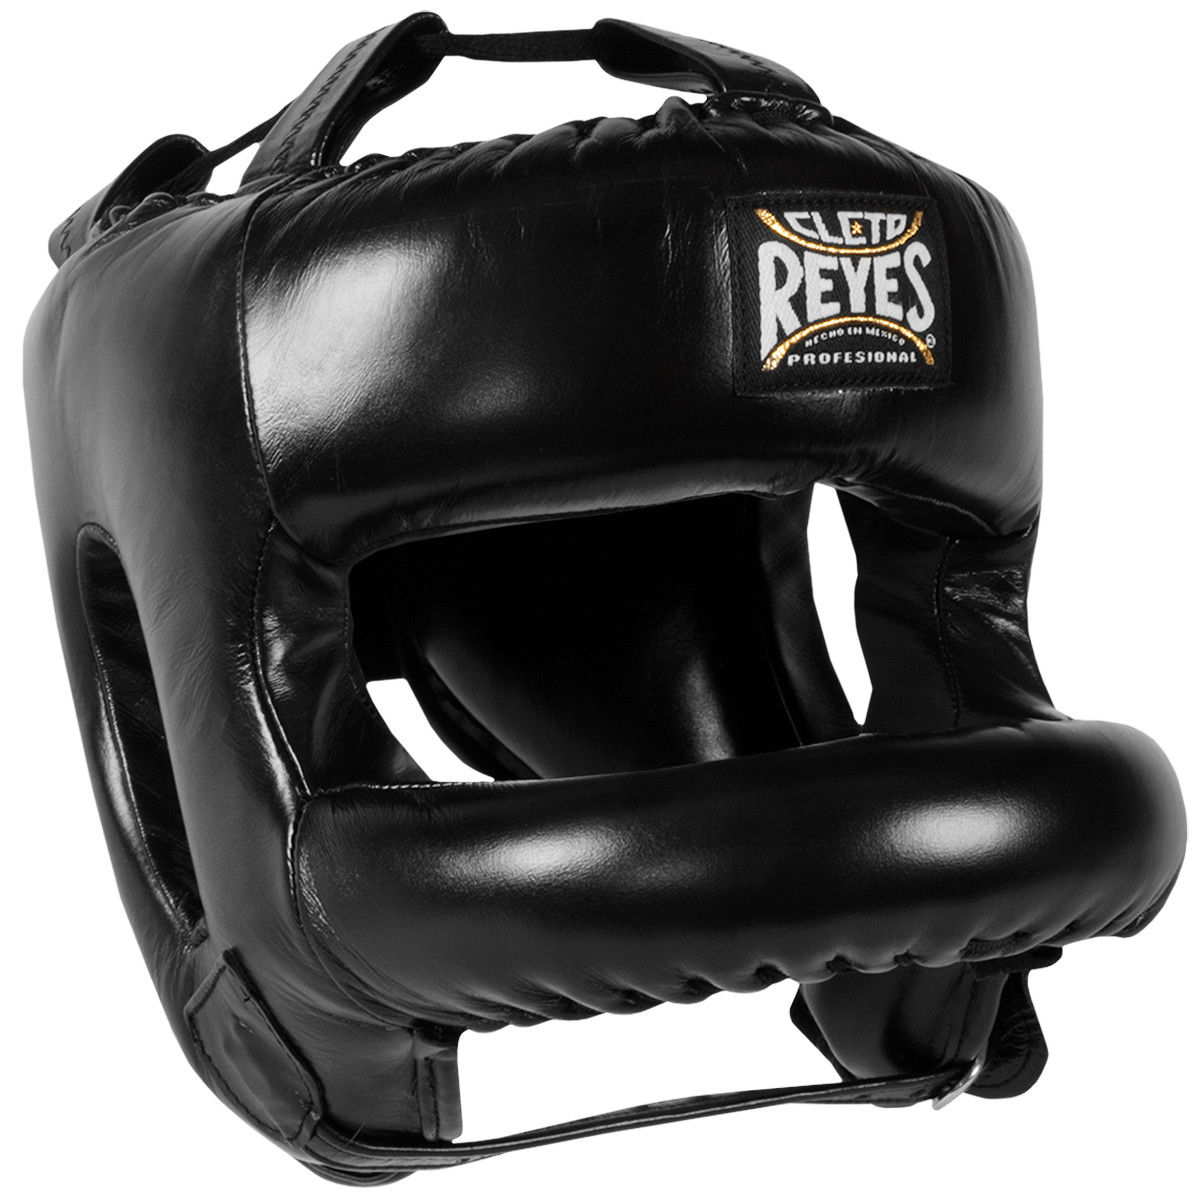 【送料無料】 REYES レイジェス reyes ボクシング ヘッドギア フリーサイズ | ヘッドガード フェイスバー付き 本革  フルフェイスヘッドギア 大人 パンチング メンズ レディース 格闘技 MMA メキシコ 公式 Cleto Reyes バンテージ キックボクシング  試合 練習 | 